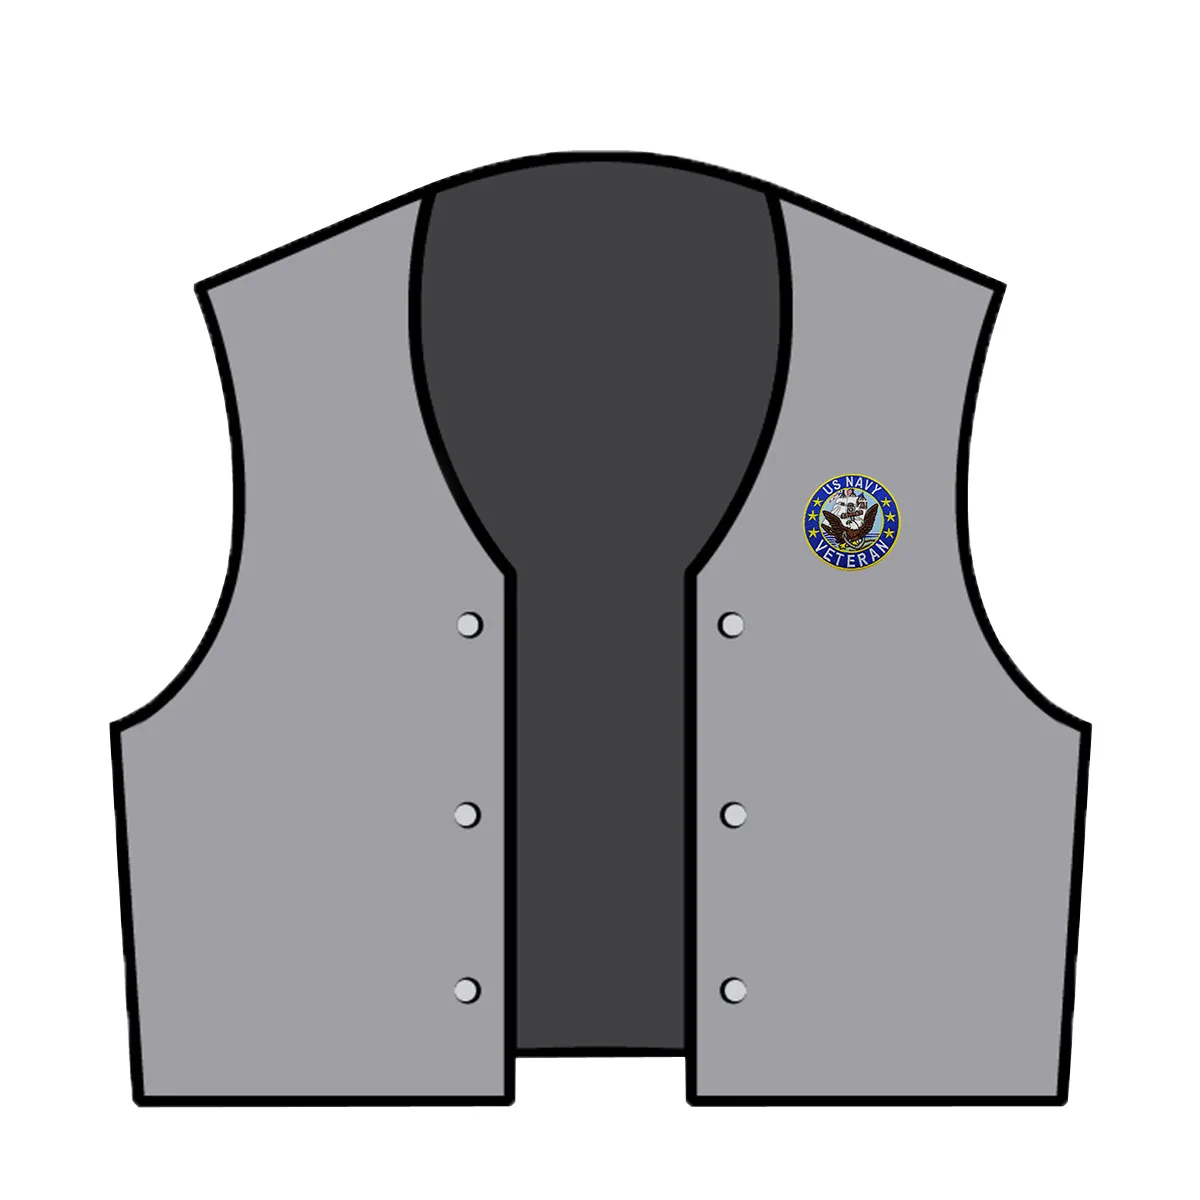 Benutzerdefinierte Stickerei auf der linken Brust, Veteranen-Navy-Aufnäher, zum Aufbügeln auf Jackenrückseite und T-Shirt oder Hutkappe279V